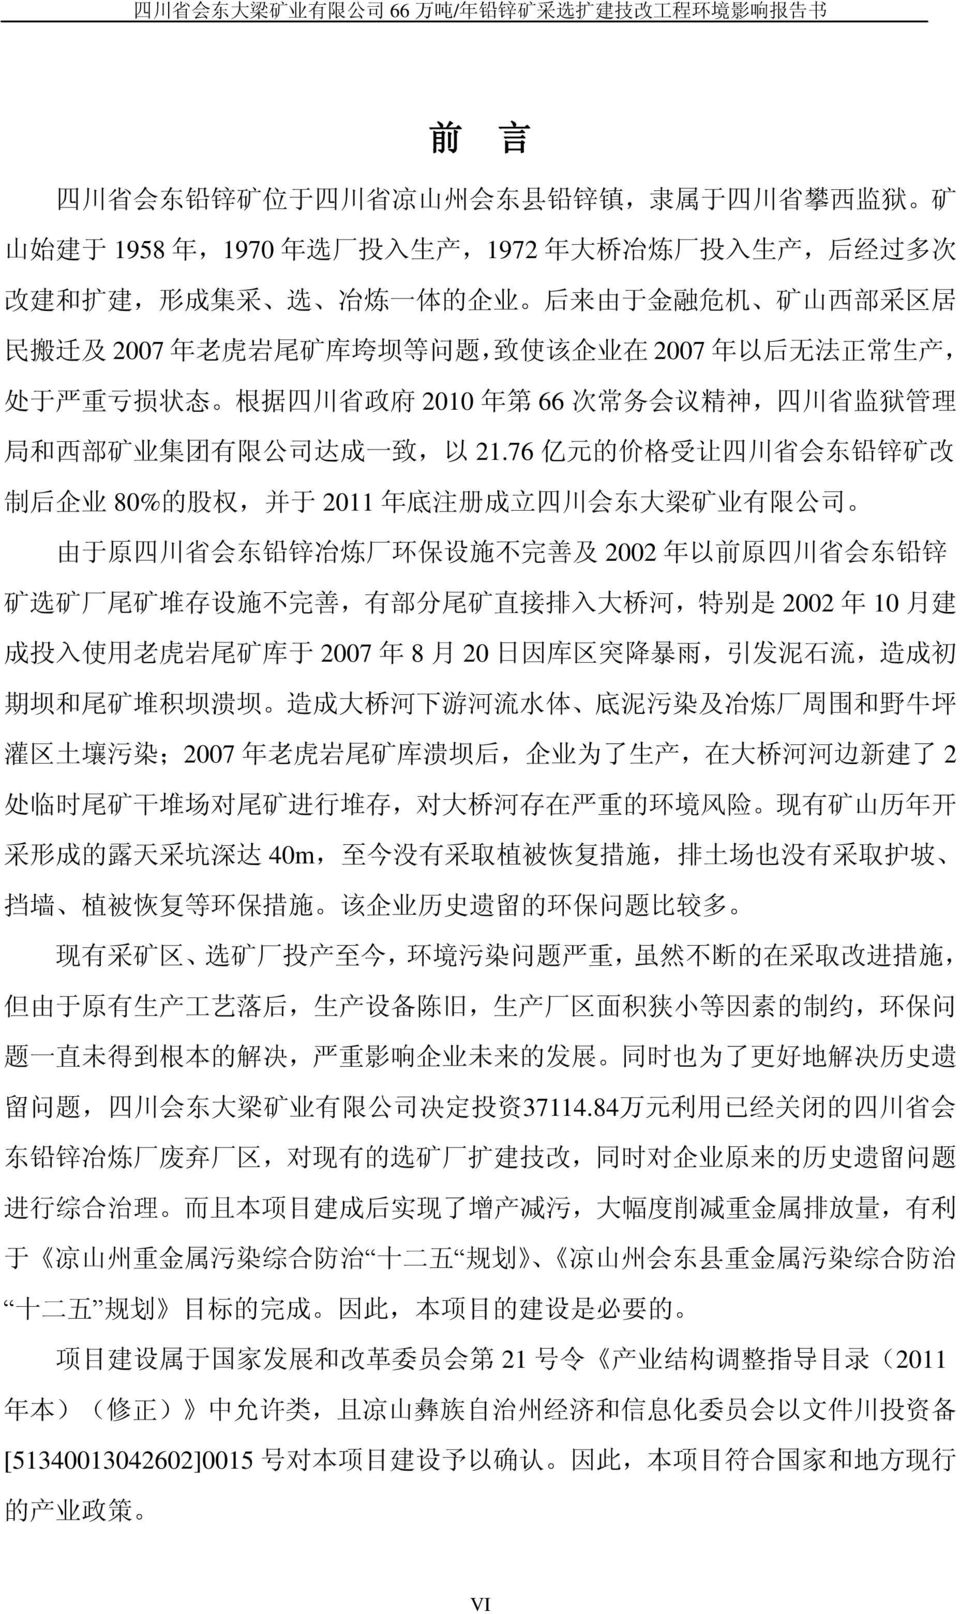 务 会 议 精 神, 四 川 省 监 狱 管 理 局 和 西 部 矿 业 集 团 有 限 公 司 达 成 一 致, 以 21.